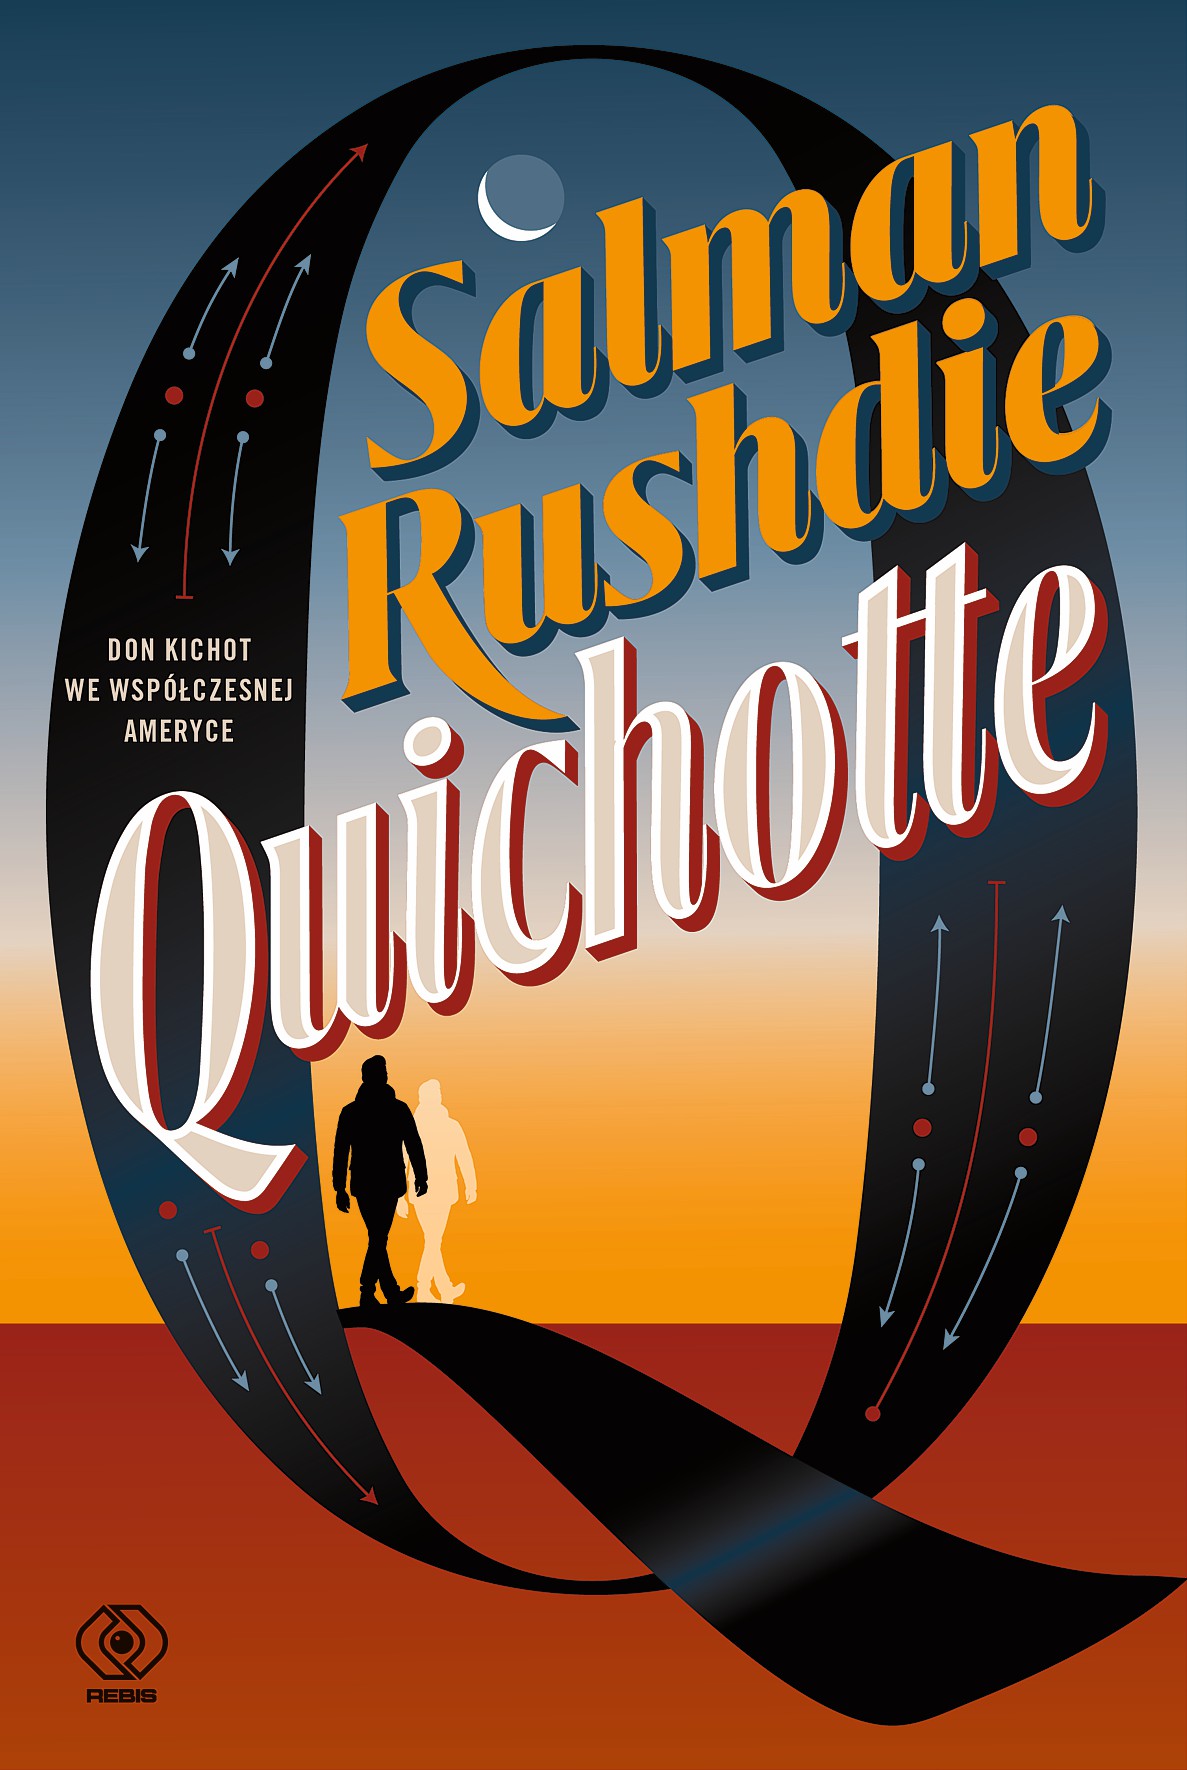 Quichotte - najnowsza powieść Salmana Rushdiego, autora Szatańskich wersetów, trafia na rynek!